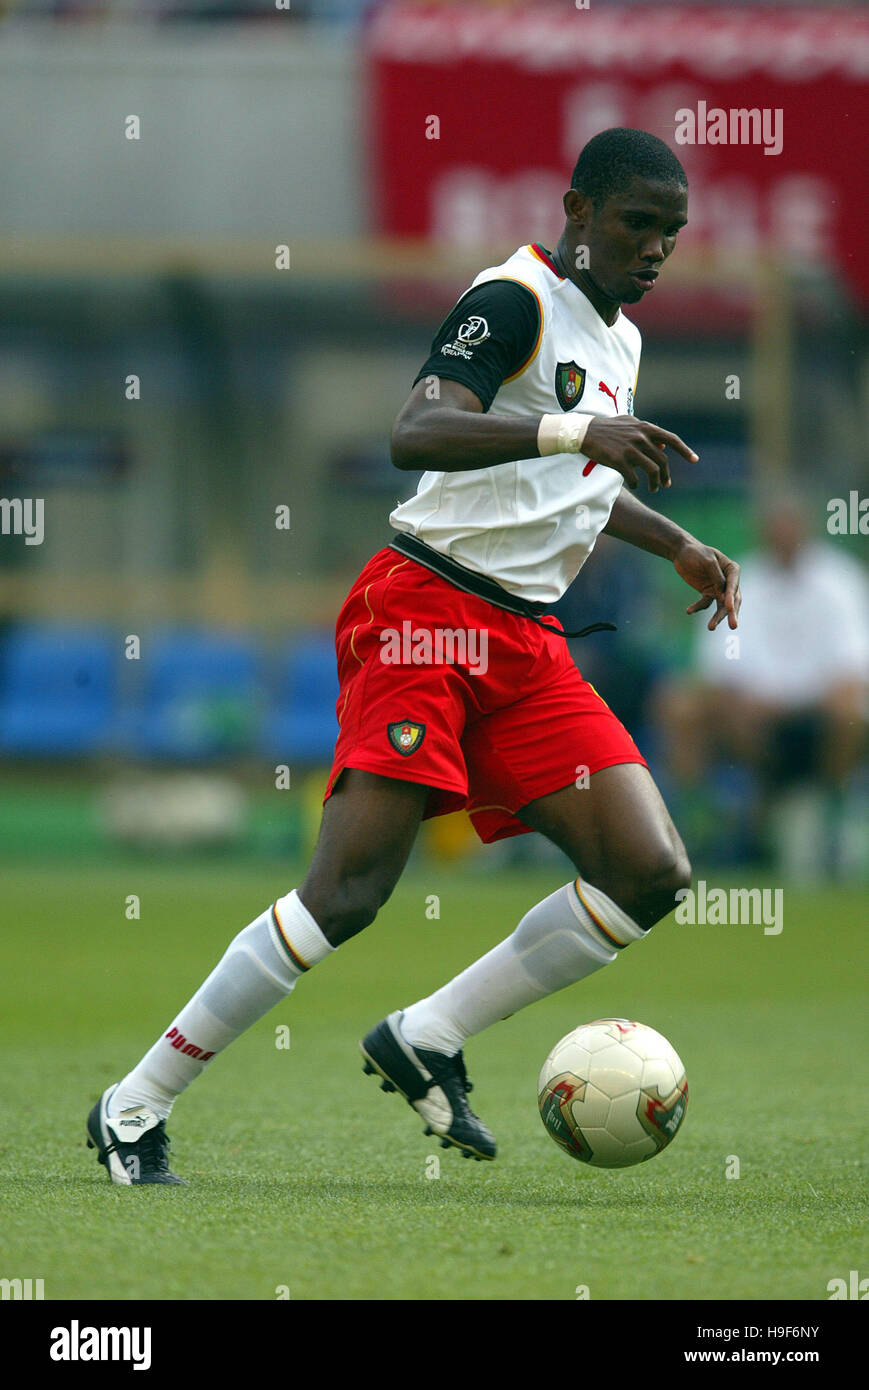 SAMUEL ETOO CAMEROON & REAL MALLORCA FC NIIGATA STADIUM NIIGATA JAPAN 01 June 2002 Stock Photo